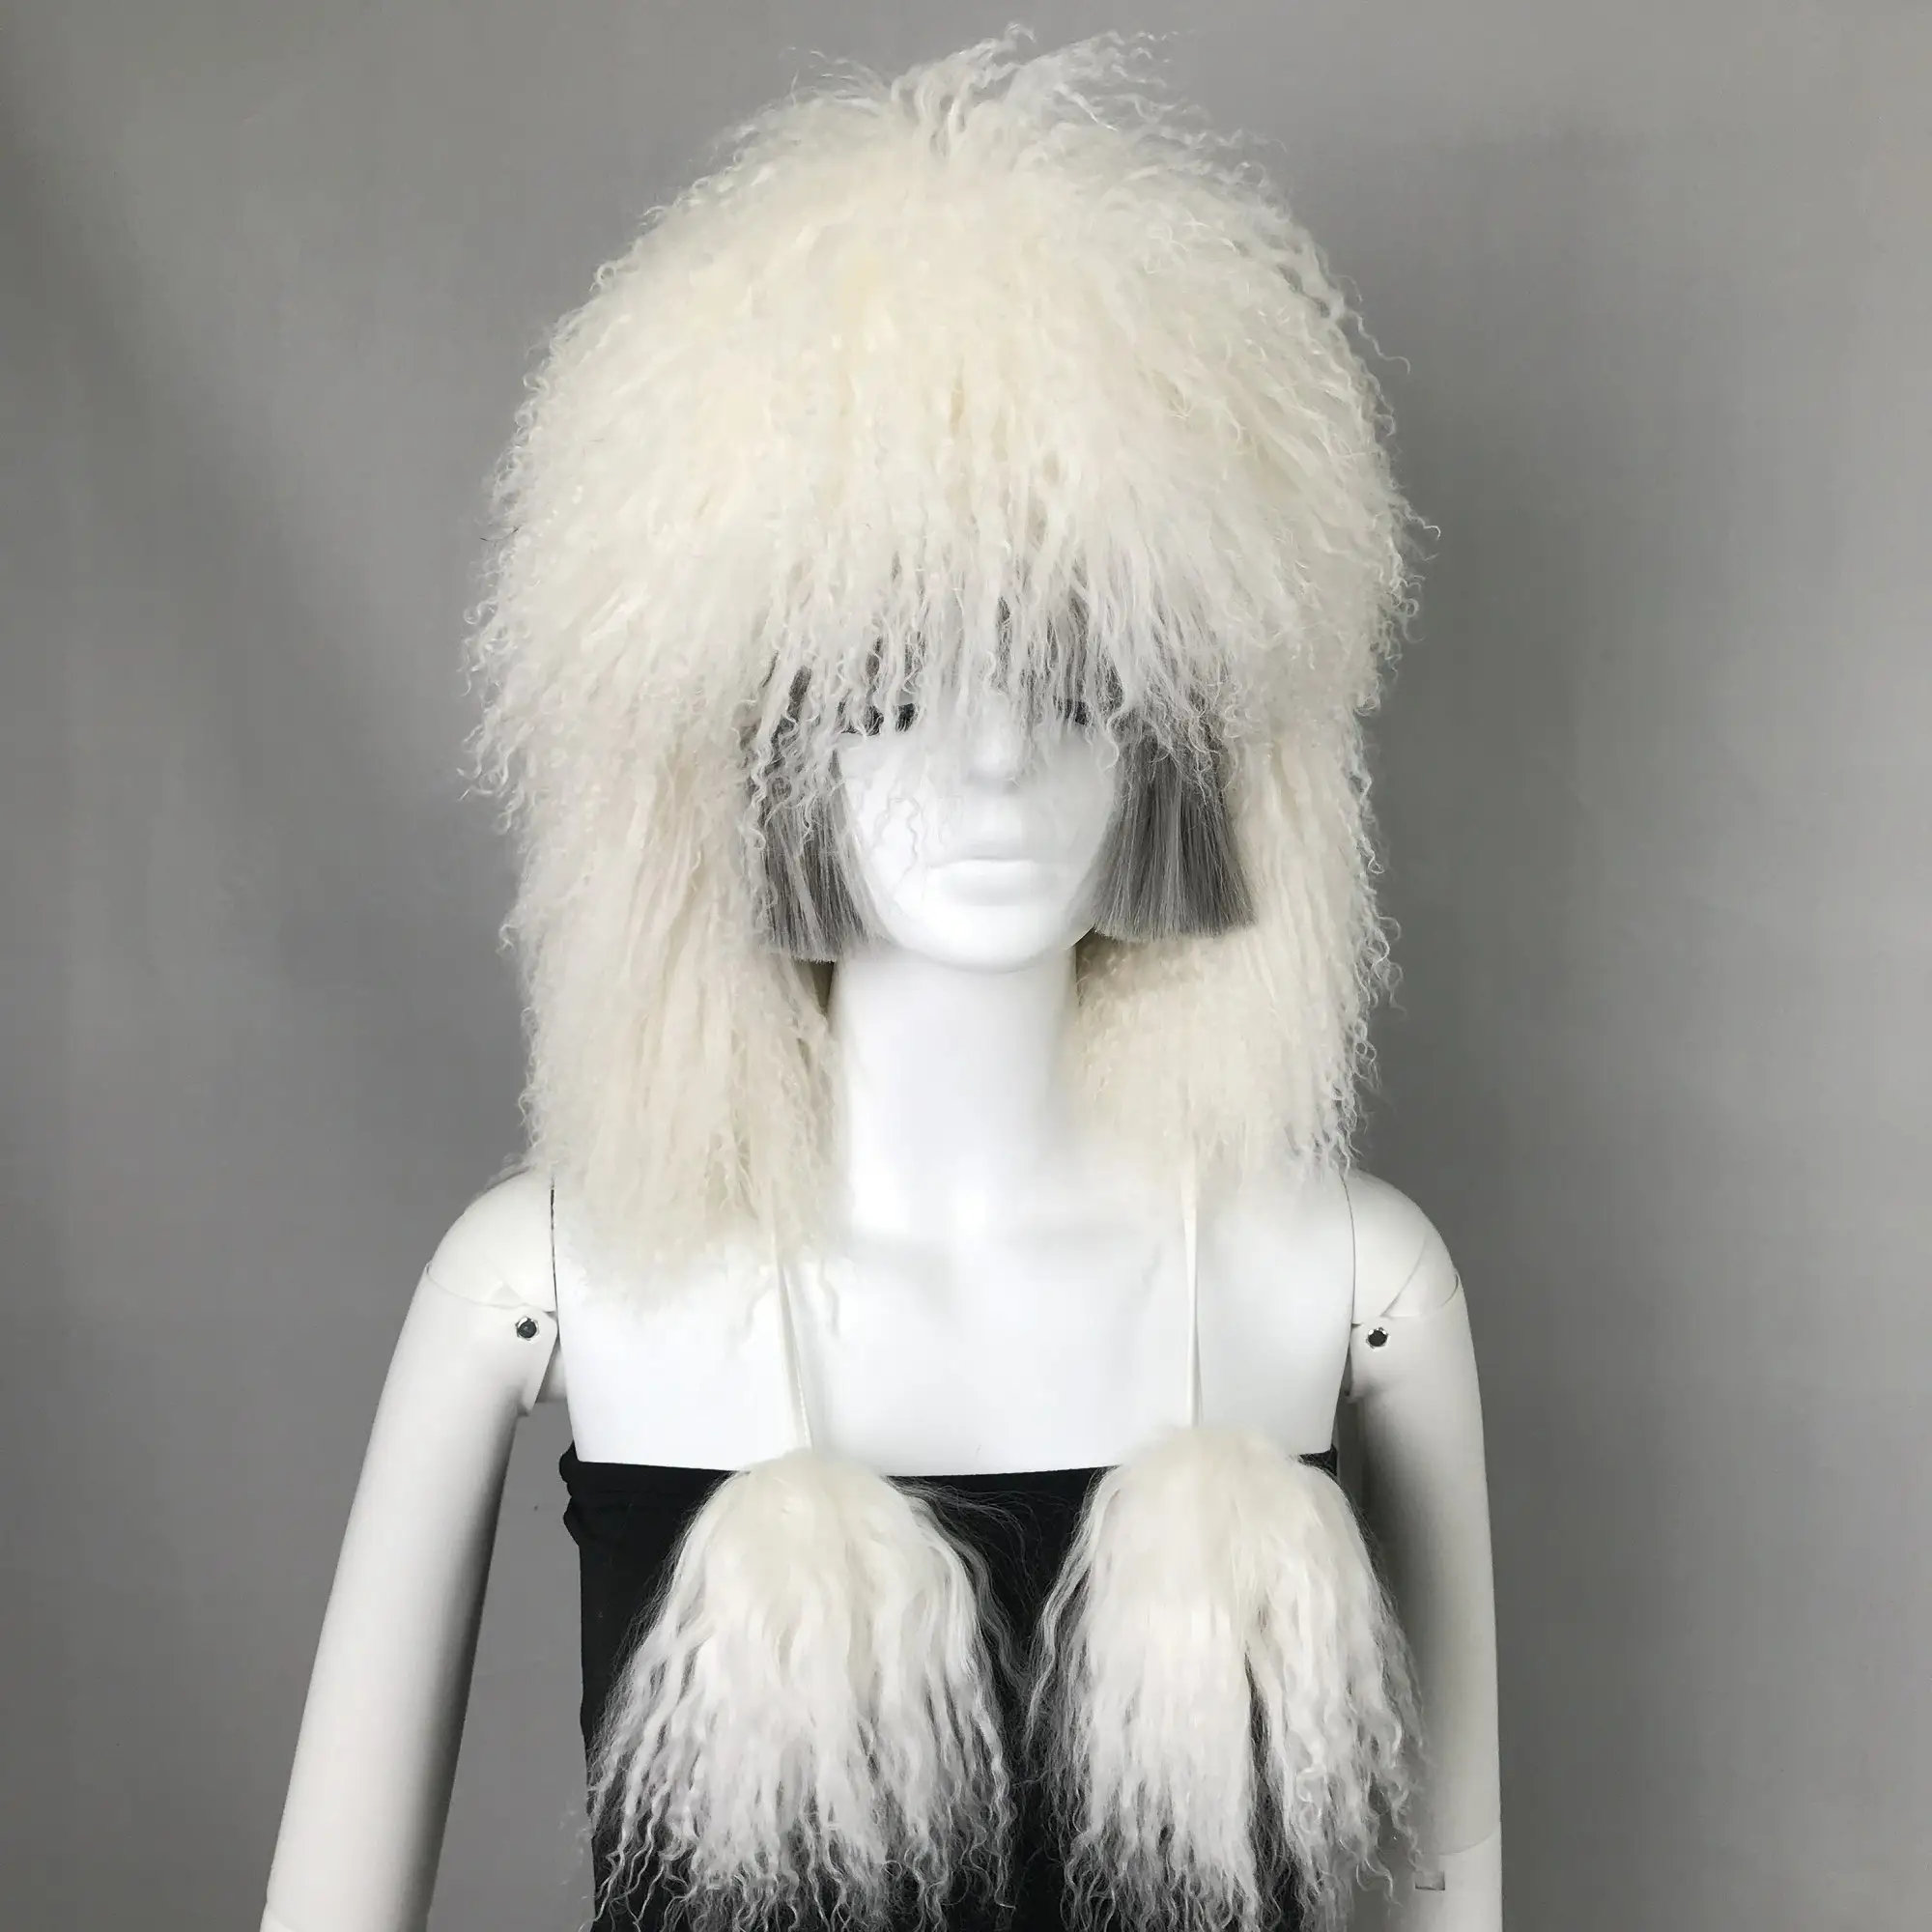 Özel yeni marka moda sıcak şapka kap moğol kuzu kürk trapper şapkalar kış yeni stil kabarık kürk TRAPPER şapka bayanlar için